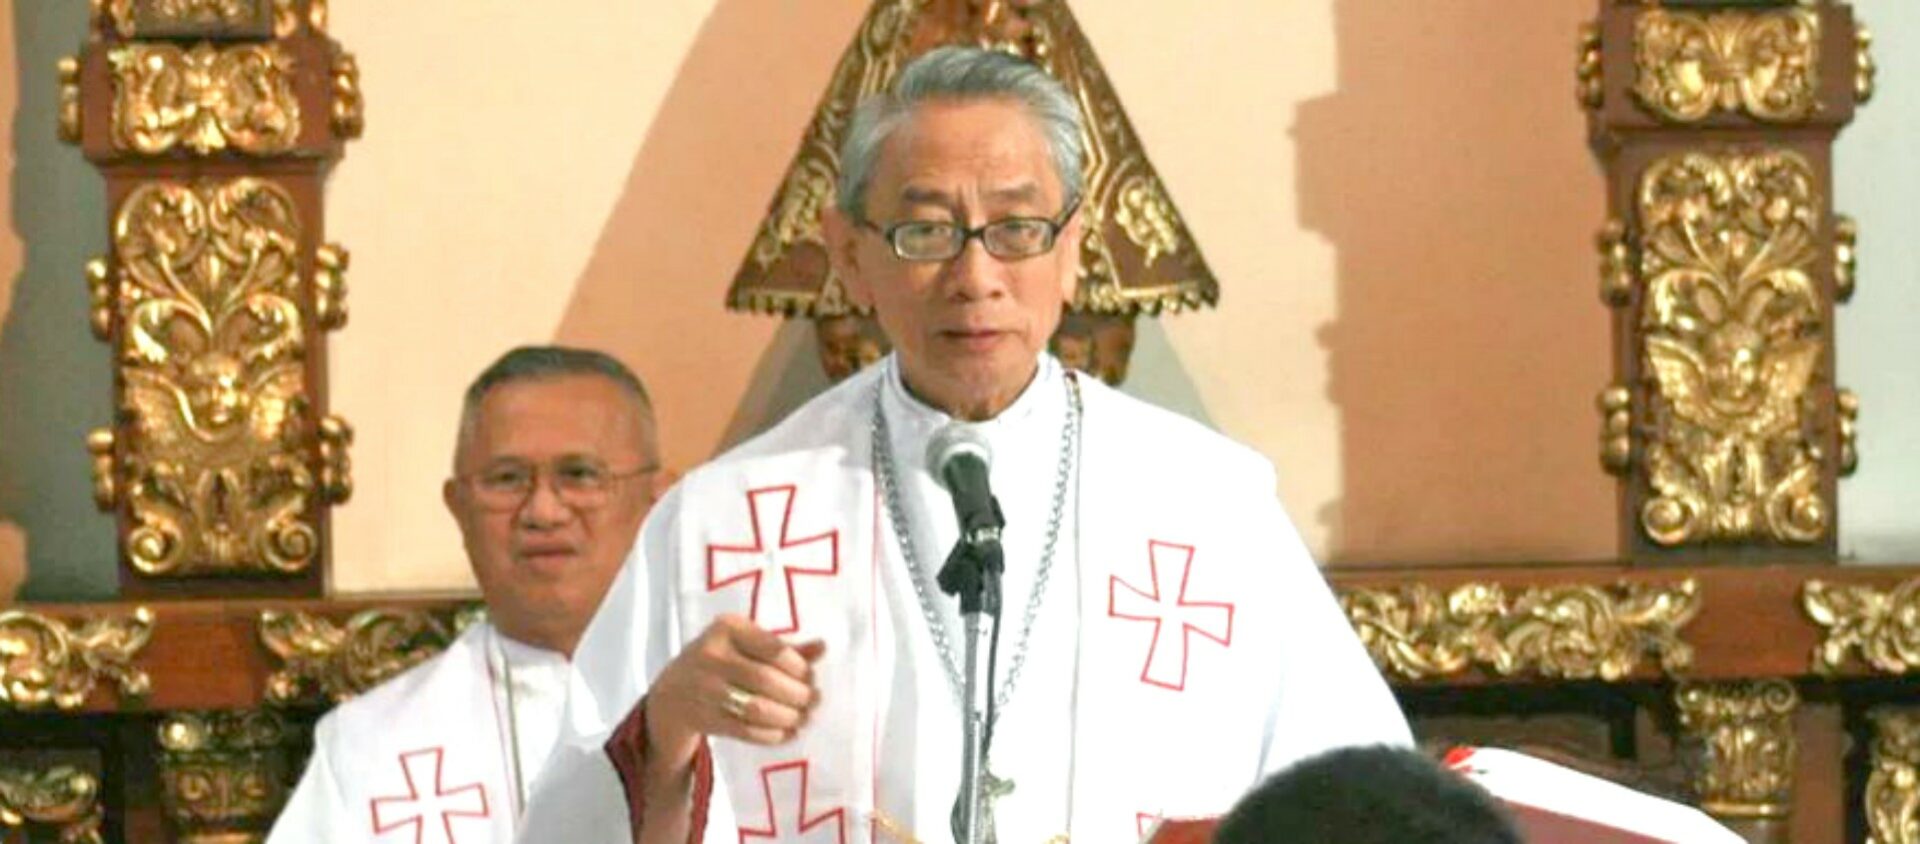 Mgr Oscar Valero Cruz, archevêque émérite de Lingayen-Dagupan, aux Philippines, est décédé du Covid-19 |  © Diocèse de Lingayen-Dagupan